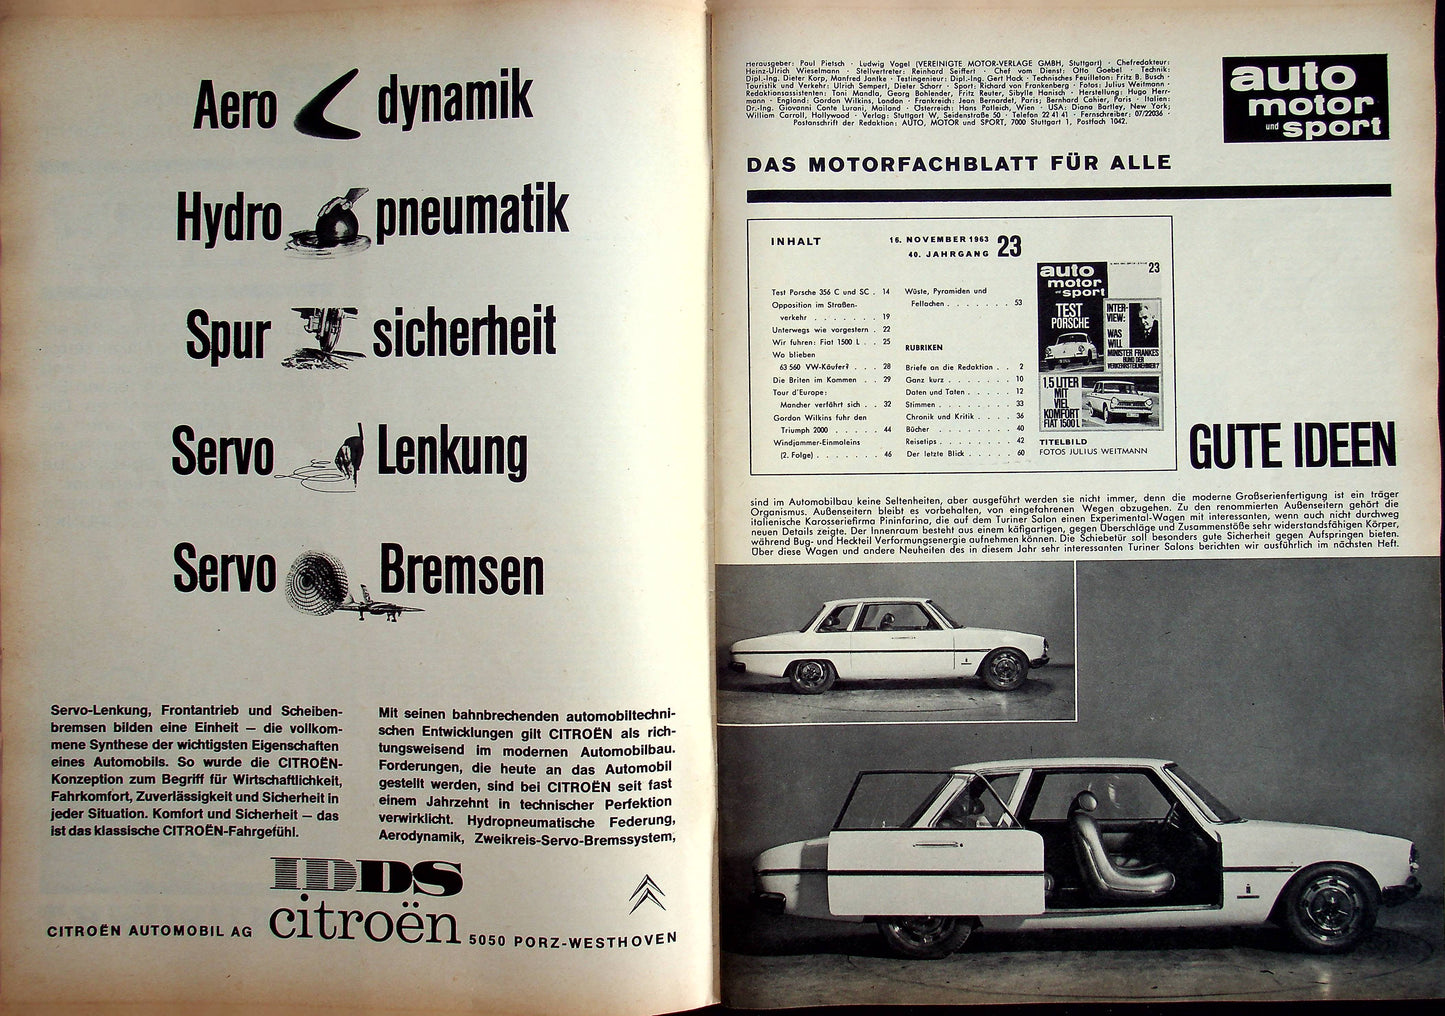 Auto Motor und Sport 23/1963